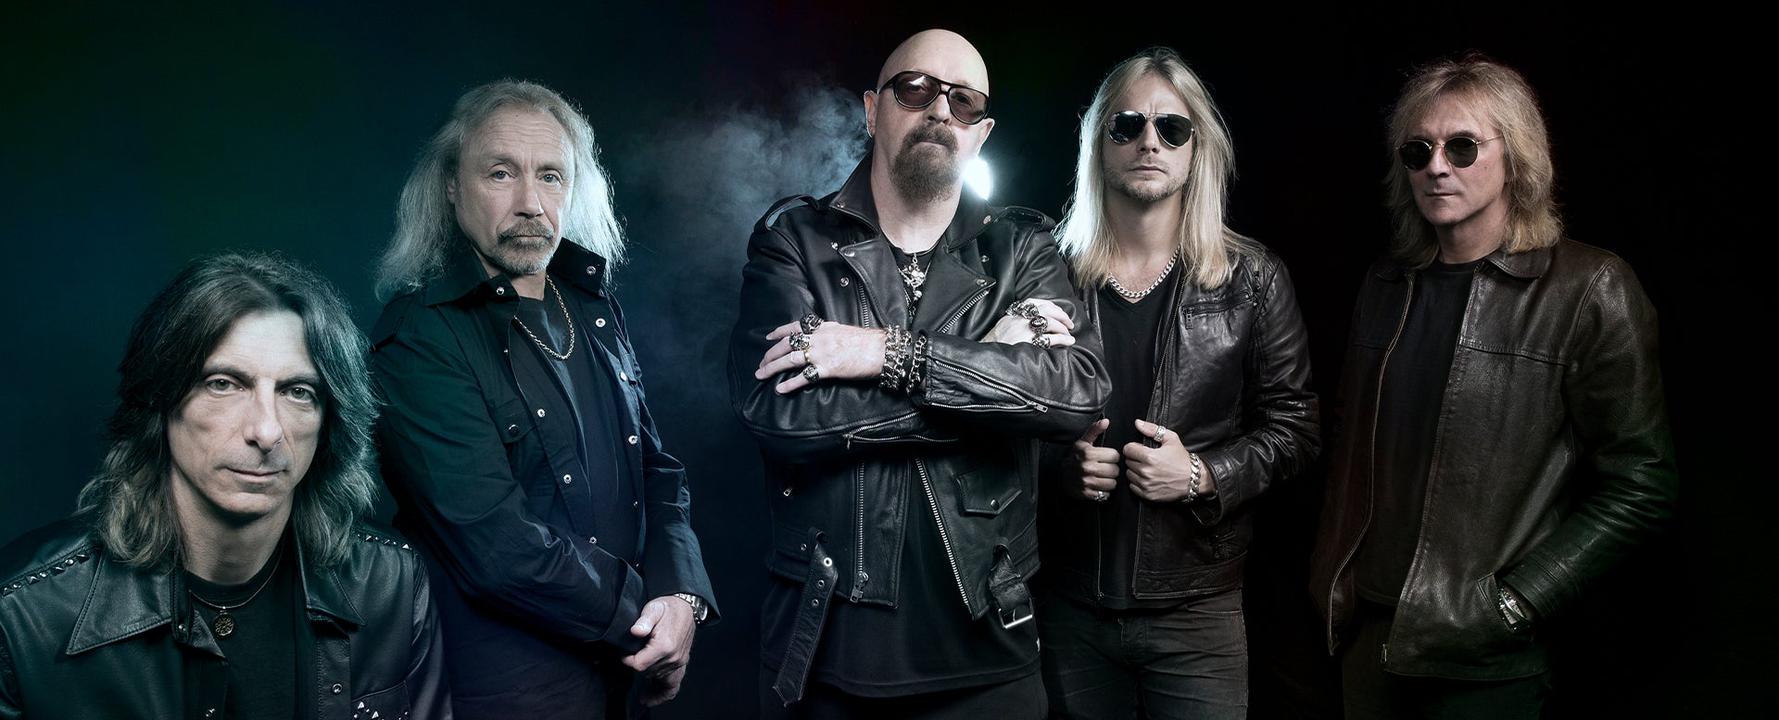 Promofoto von Judas Priest.